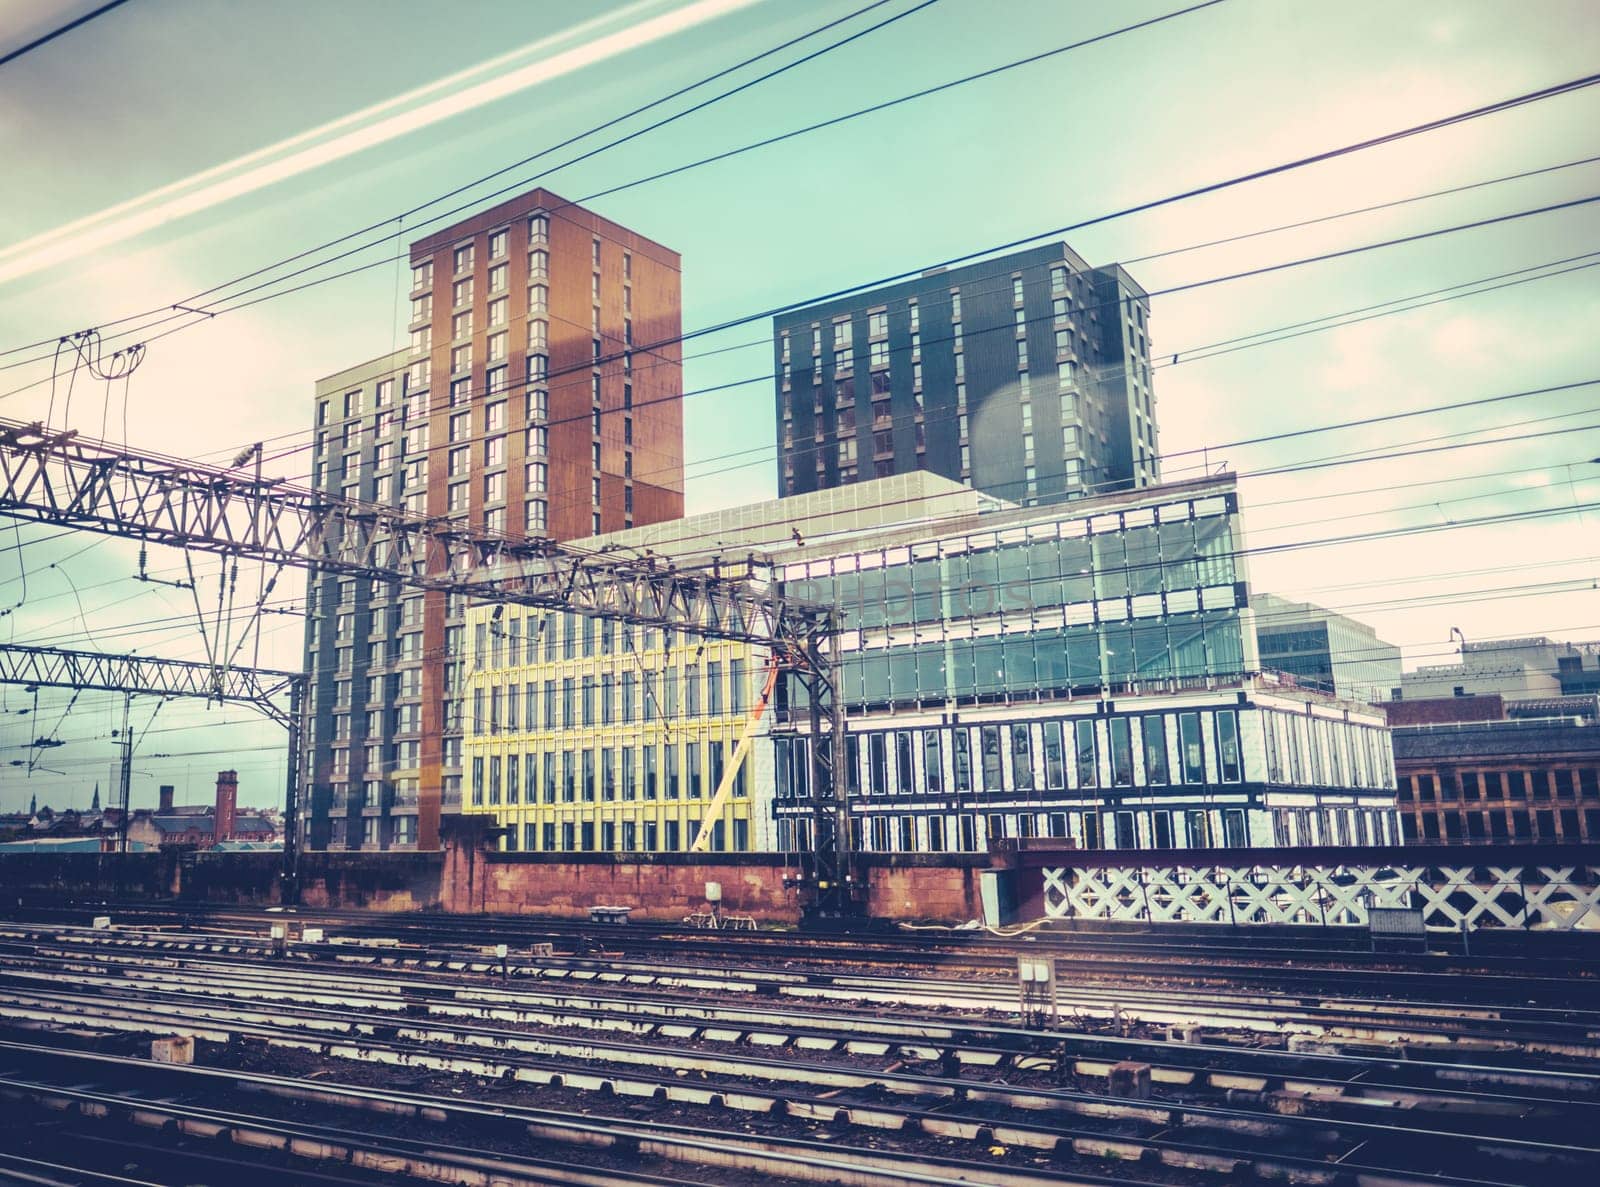 Urban Landscape Through A Train Window by mrdoomits